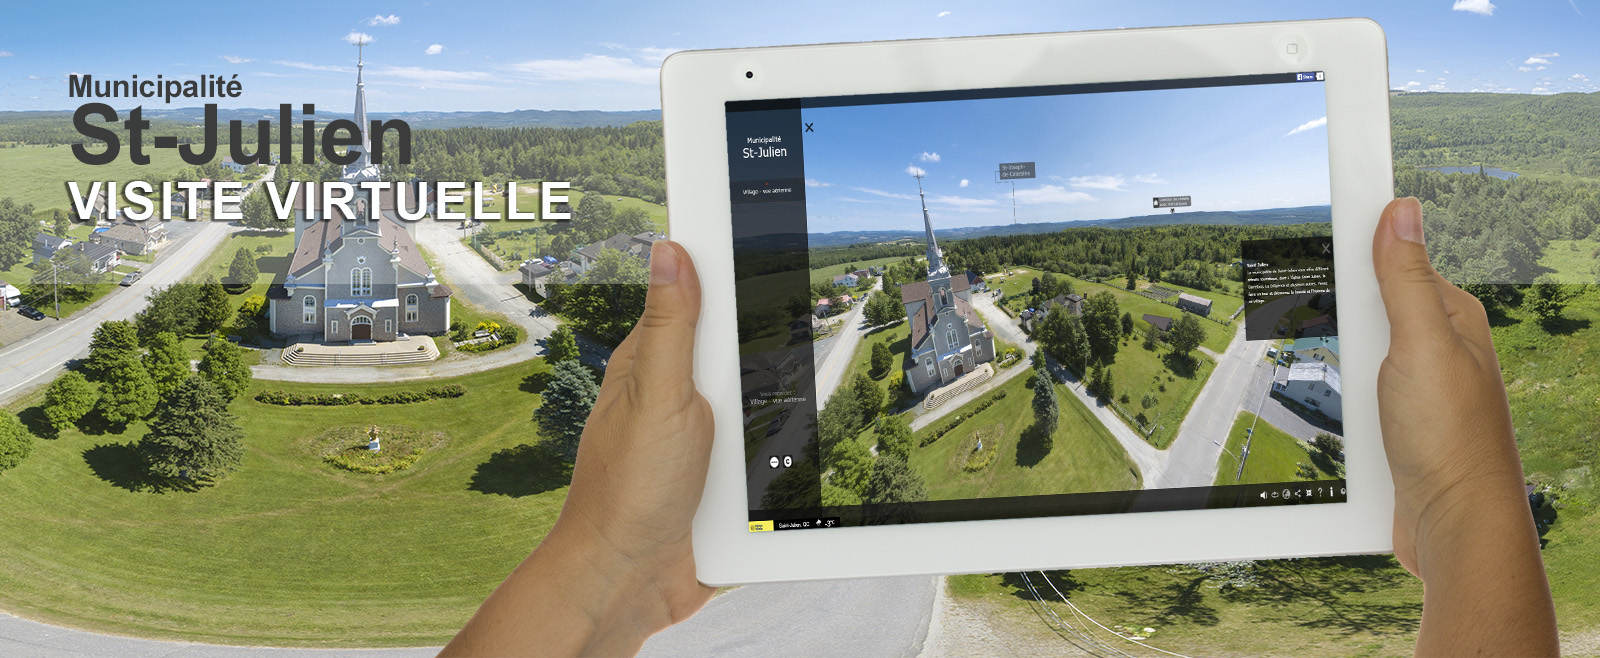 Visite virtuelle 360 degrés St-Julien